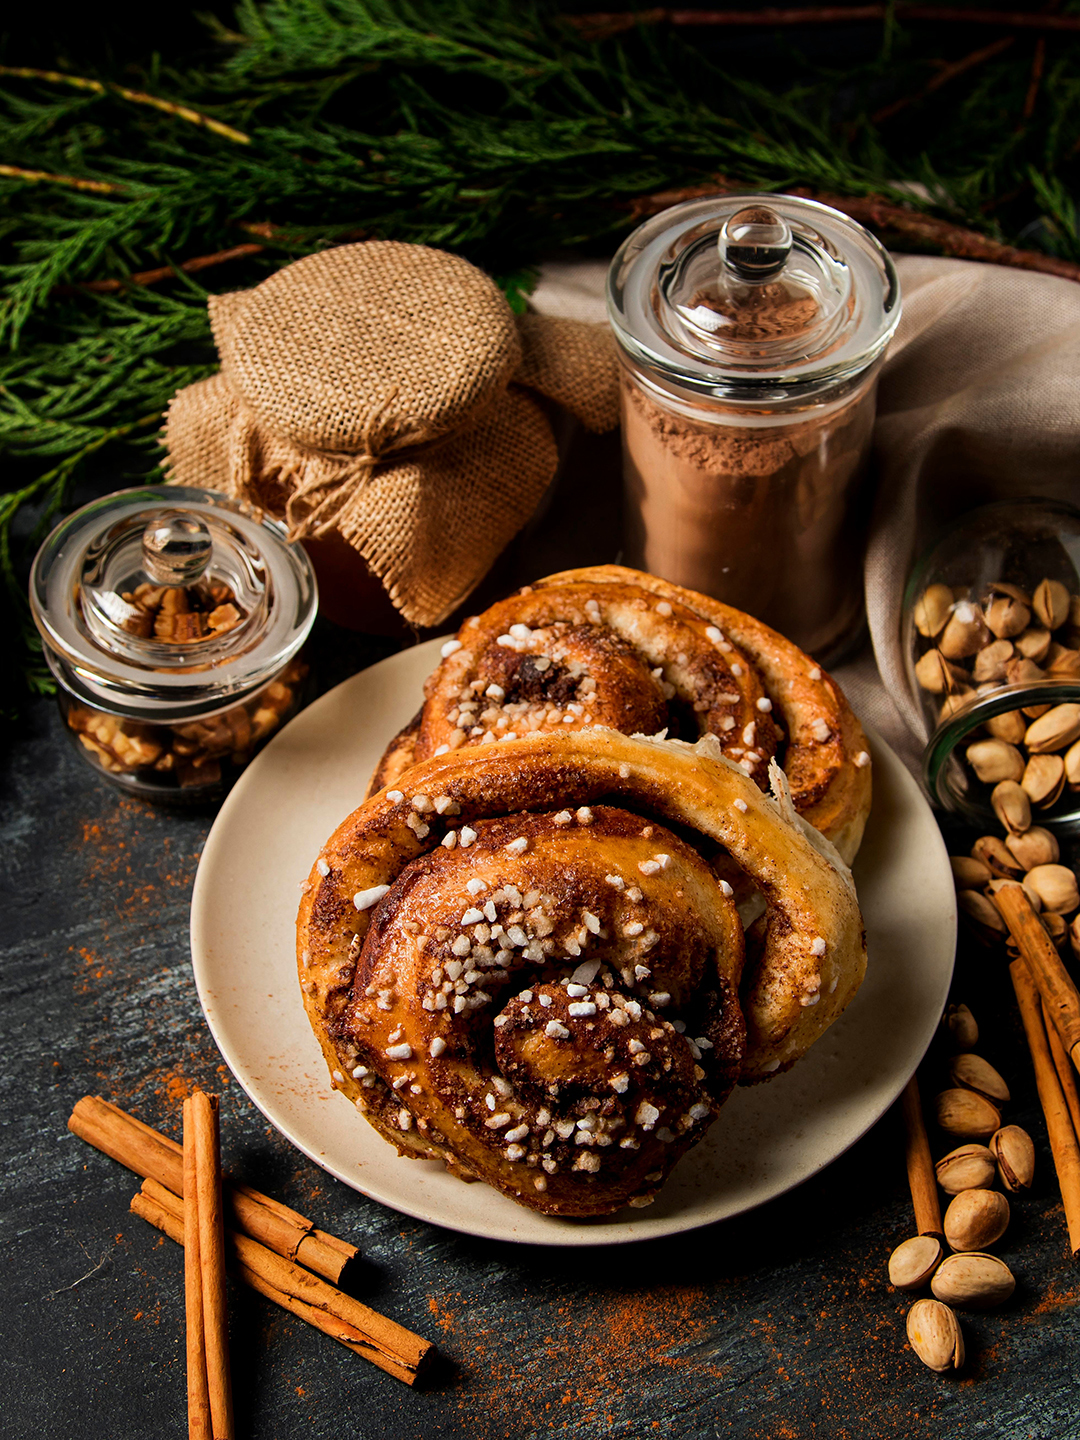 Conheça o cinnamon roll, pão doce de origem sueca